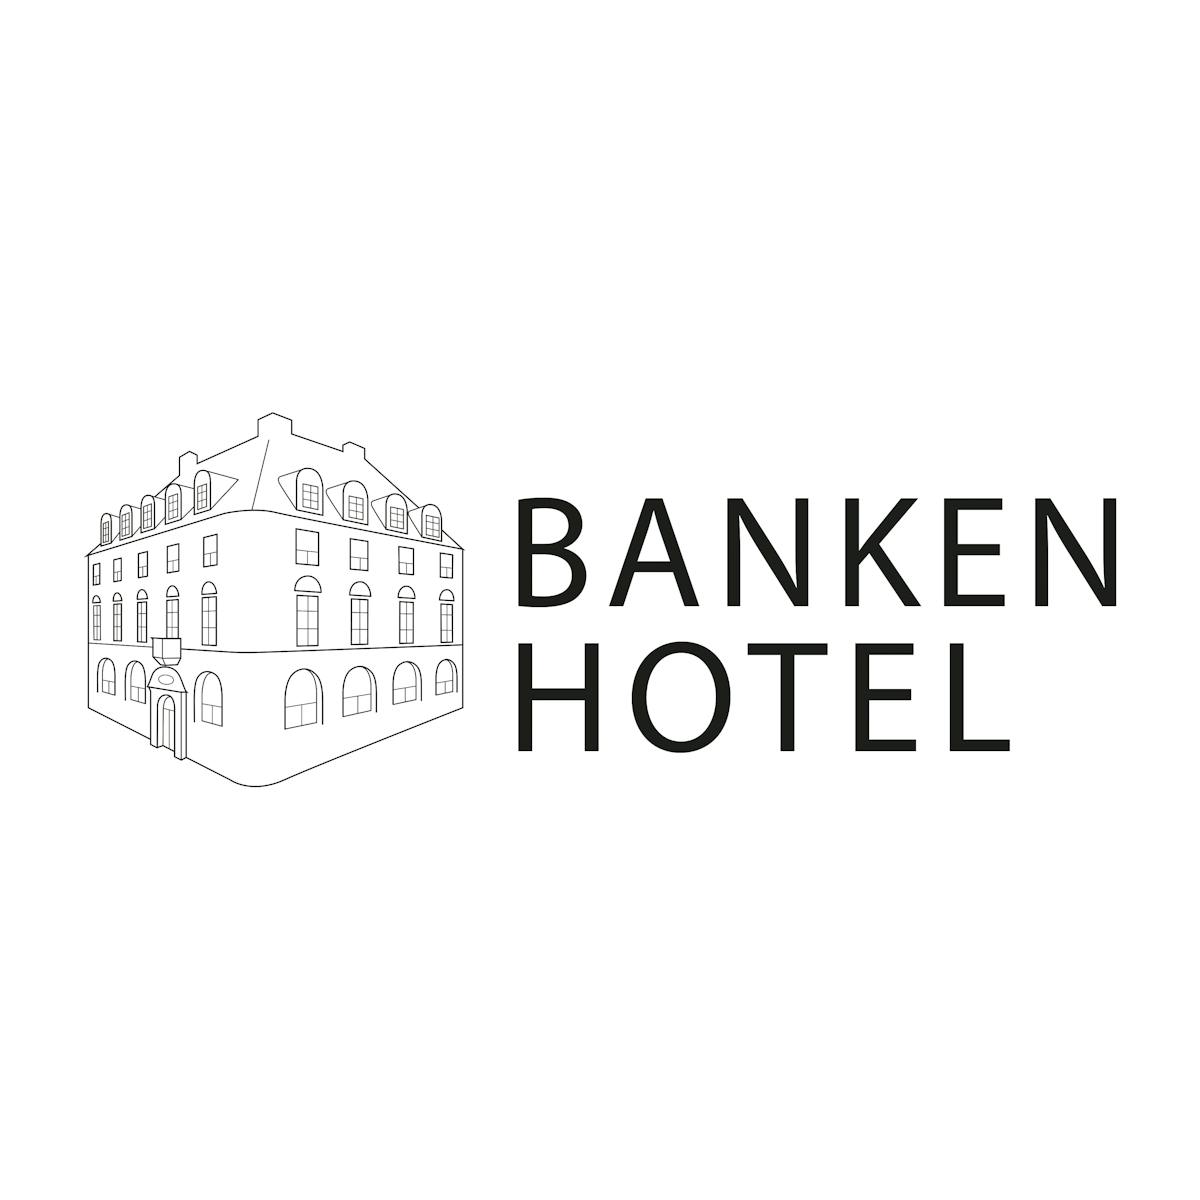 Banken hotel